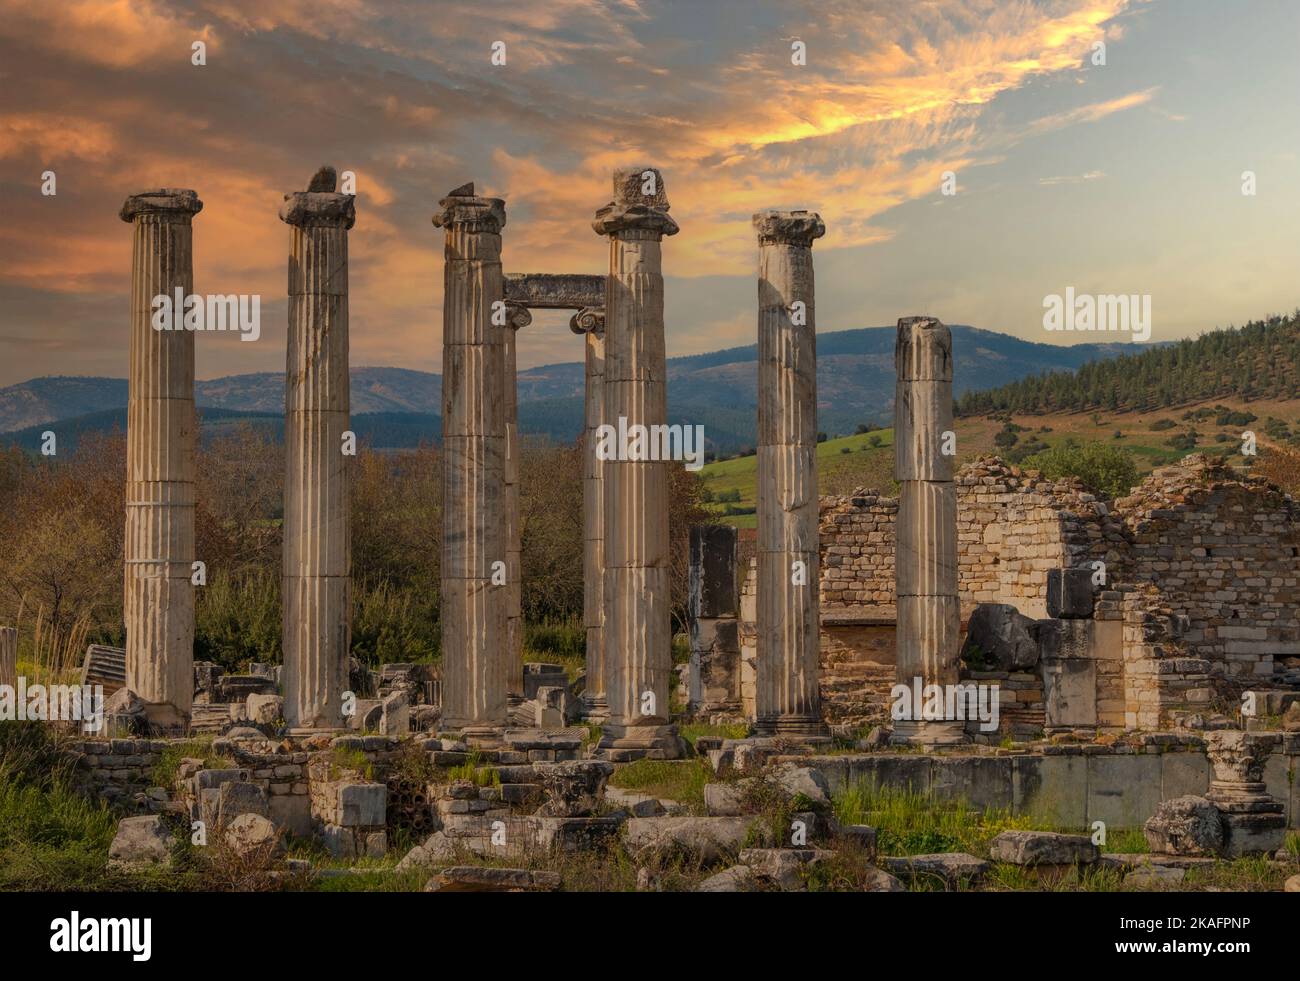 La antigua ciudad de Afrodisias. Sitios arqueológicos e históricos de la Turquía moderna Foto de stock